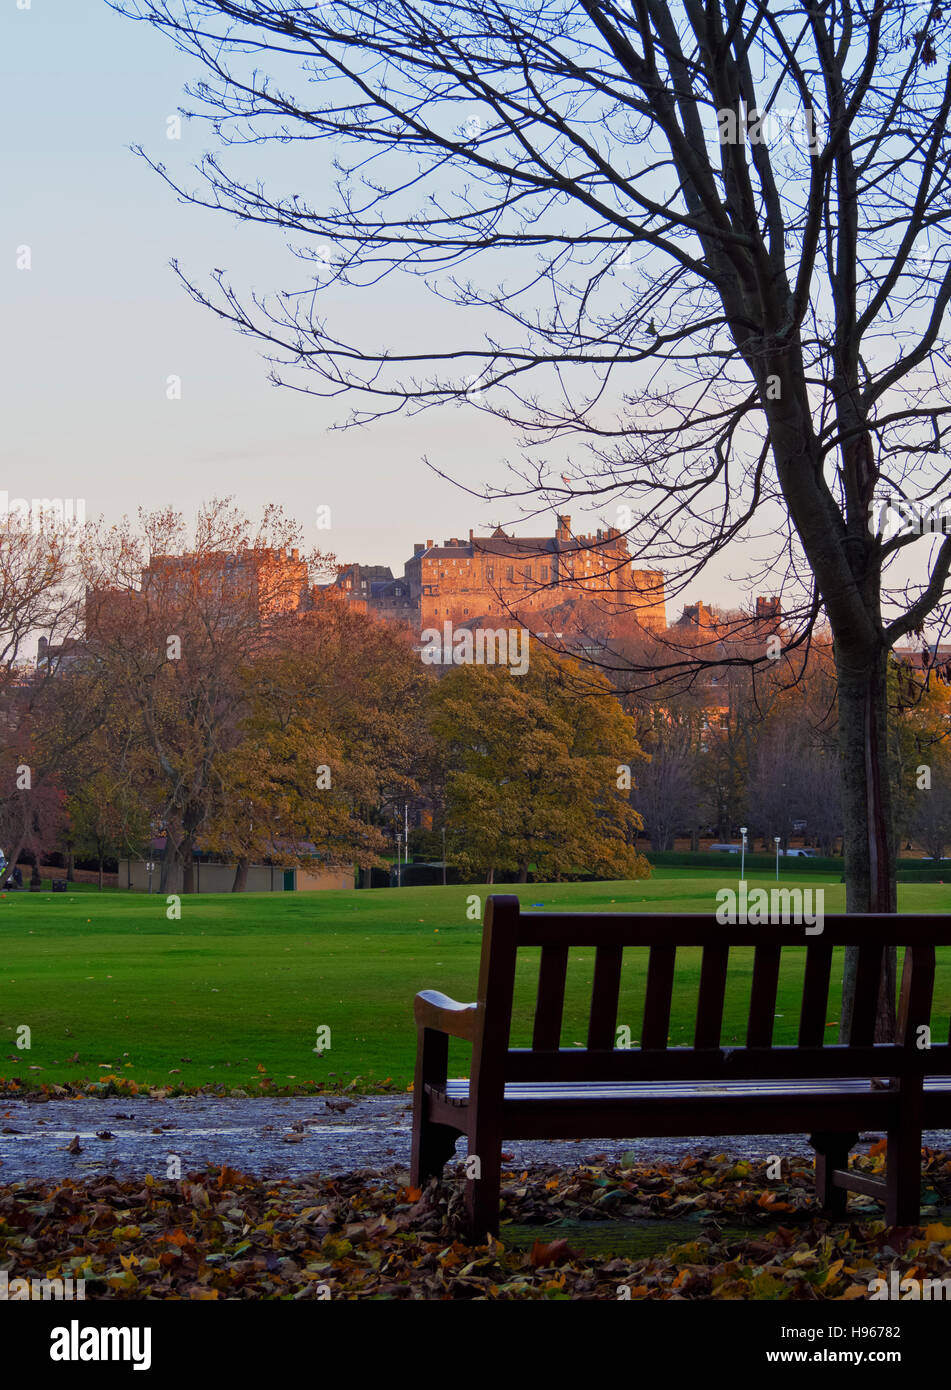 Royaume-uni, Ecosse, Lothian, Édimbourg, vue sur le château d'Édimbourg et le parc des Meadows illuminée par le lever du soleil. Banque D'Images